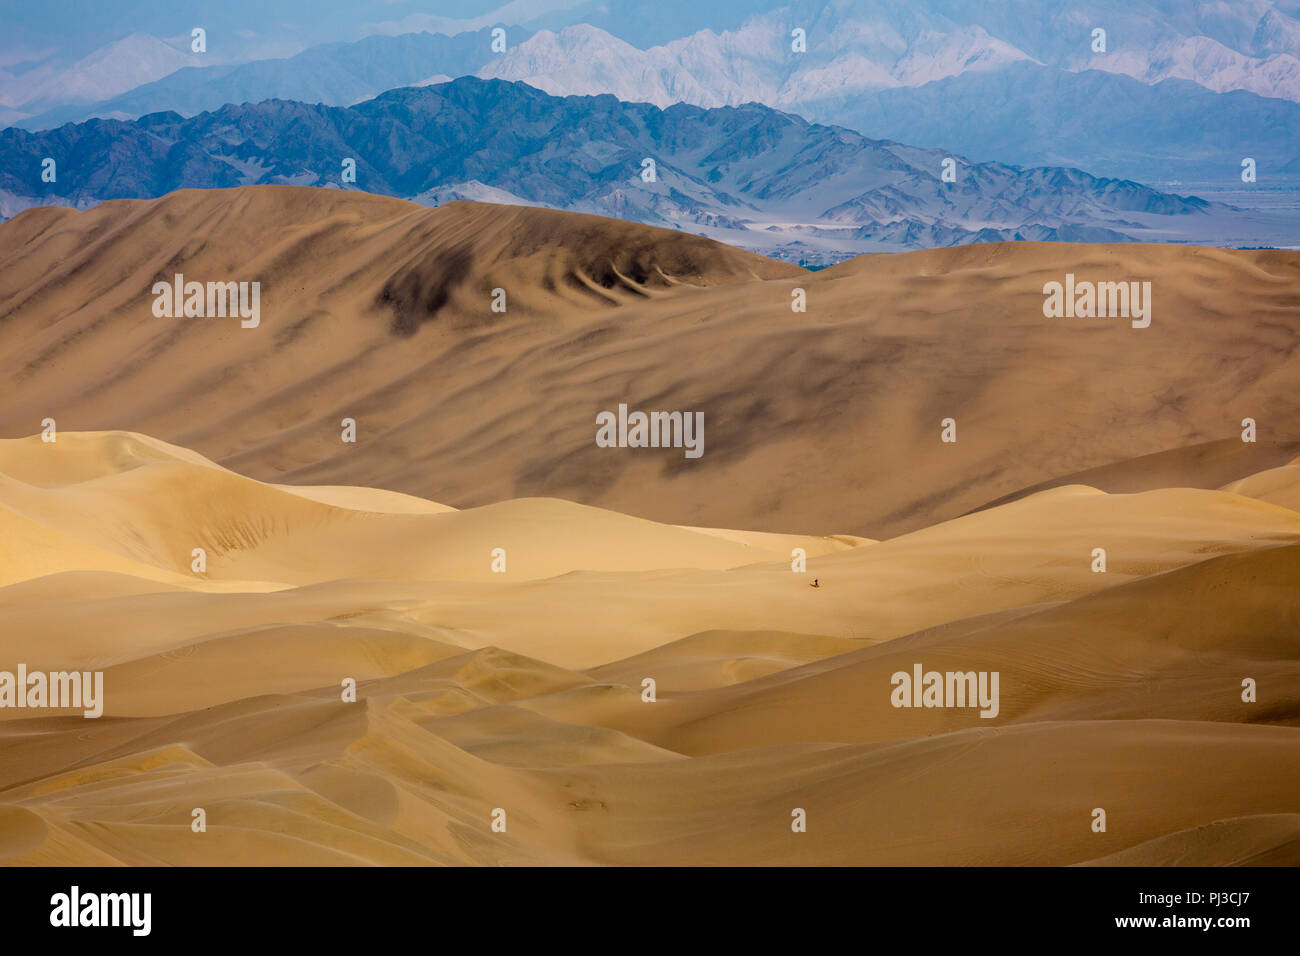 Allein in der Wüste - Huacachina - Wüste - Peru Stockfoto